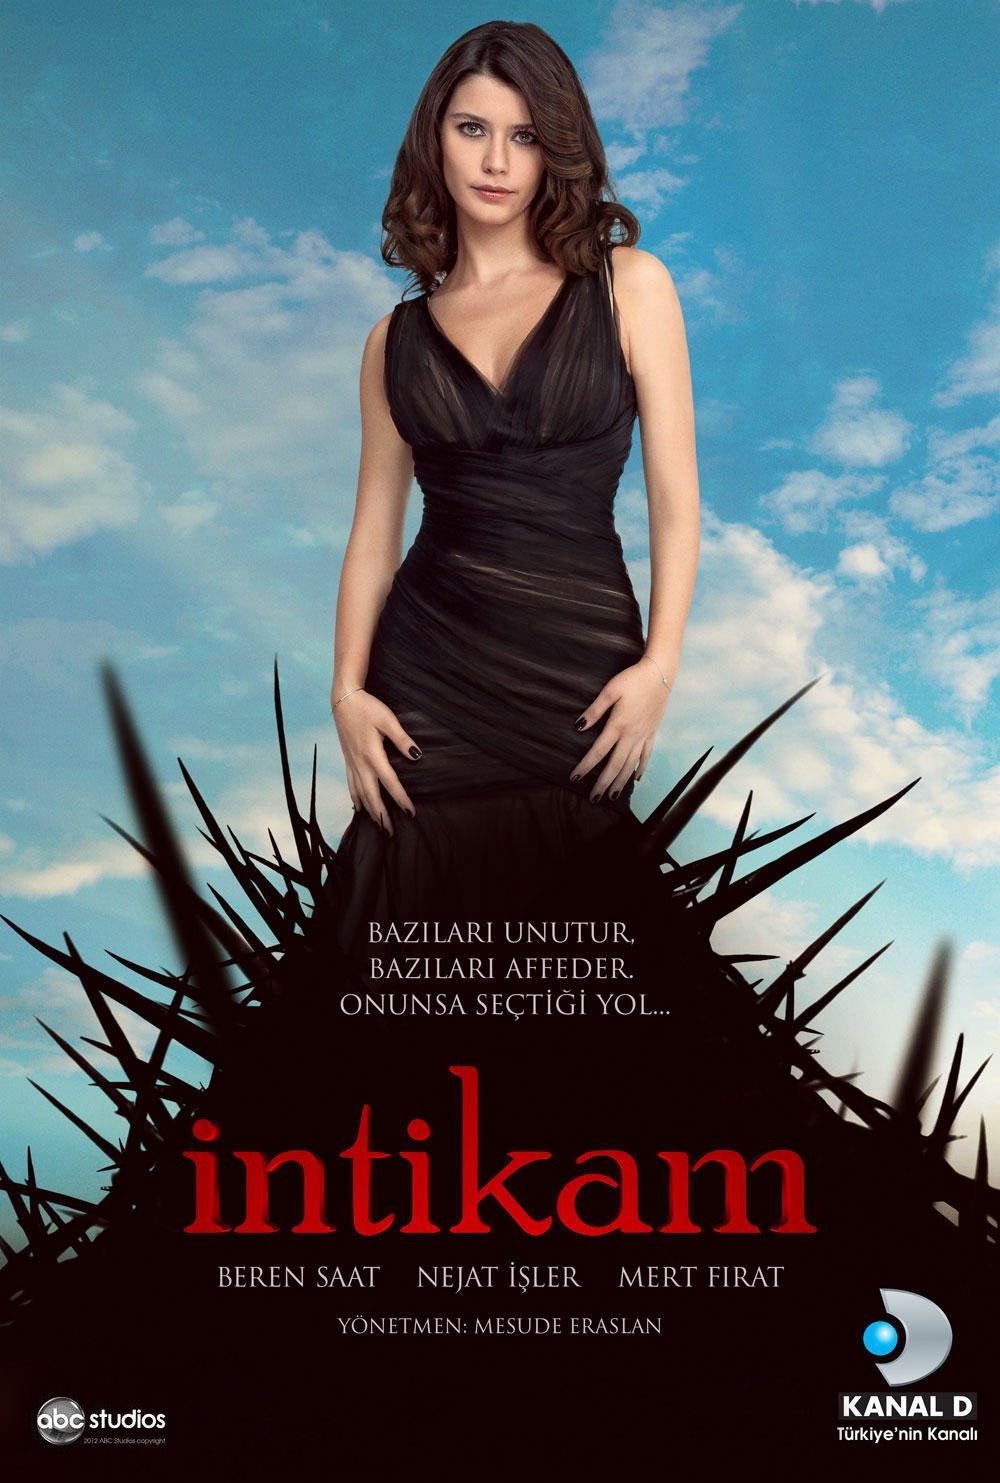 TV ratings for Intikam (Revenge) in the United States. Kanal D TV series